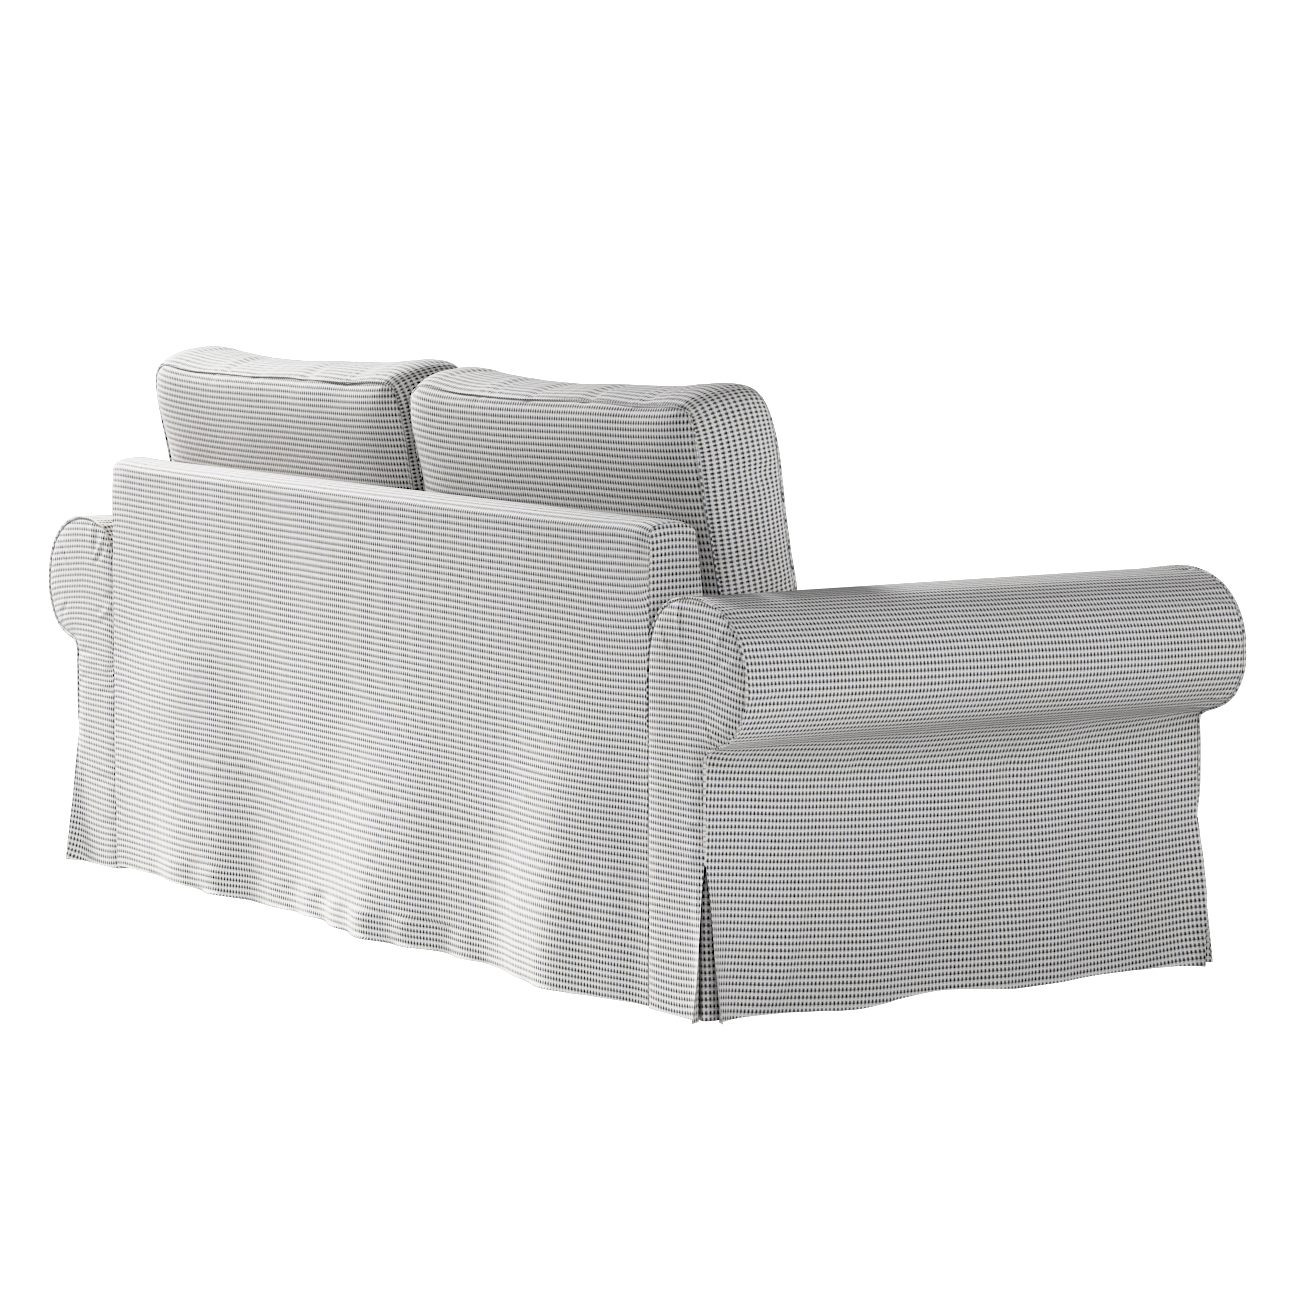 Bezug für Backabro 3-Sitzer Sofa ausklappbar, schwarz-beige, Bezug für Back günstig online kaufen